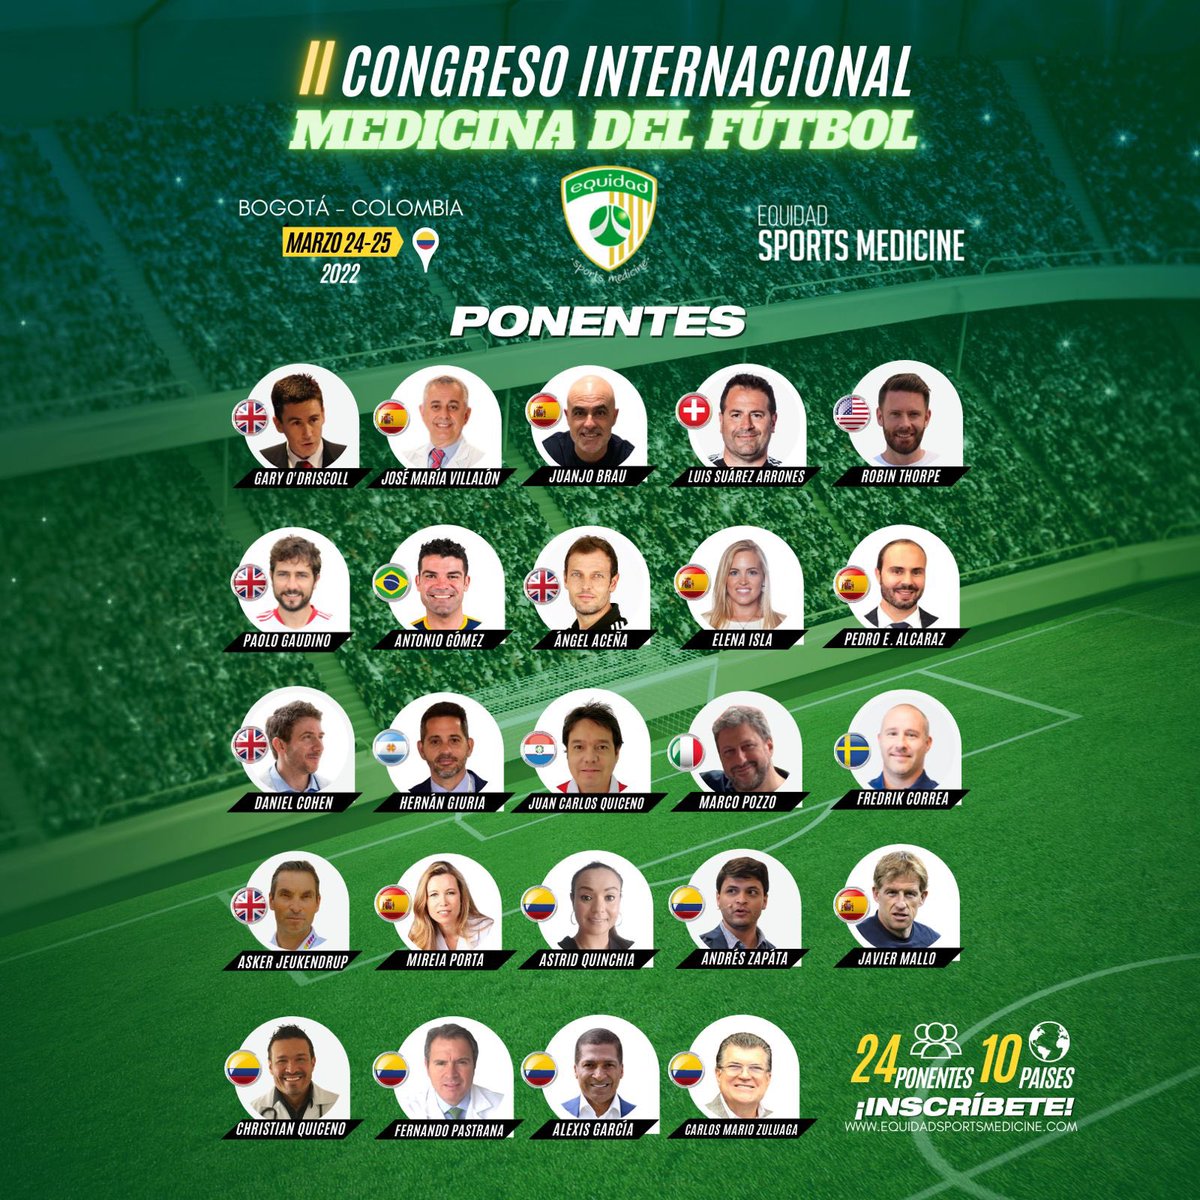 Inscríbete al reconocido evento de Medicina Deportiva⚽️ en Colombia🇨🇴Conoce más detalles del II Congreso Internacional de Medicina del Fútbol en el siguiente link equidadsportsmedicine.com👈